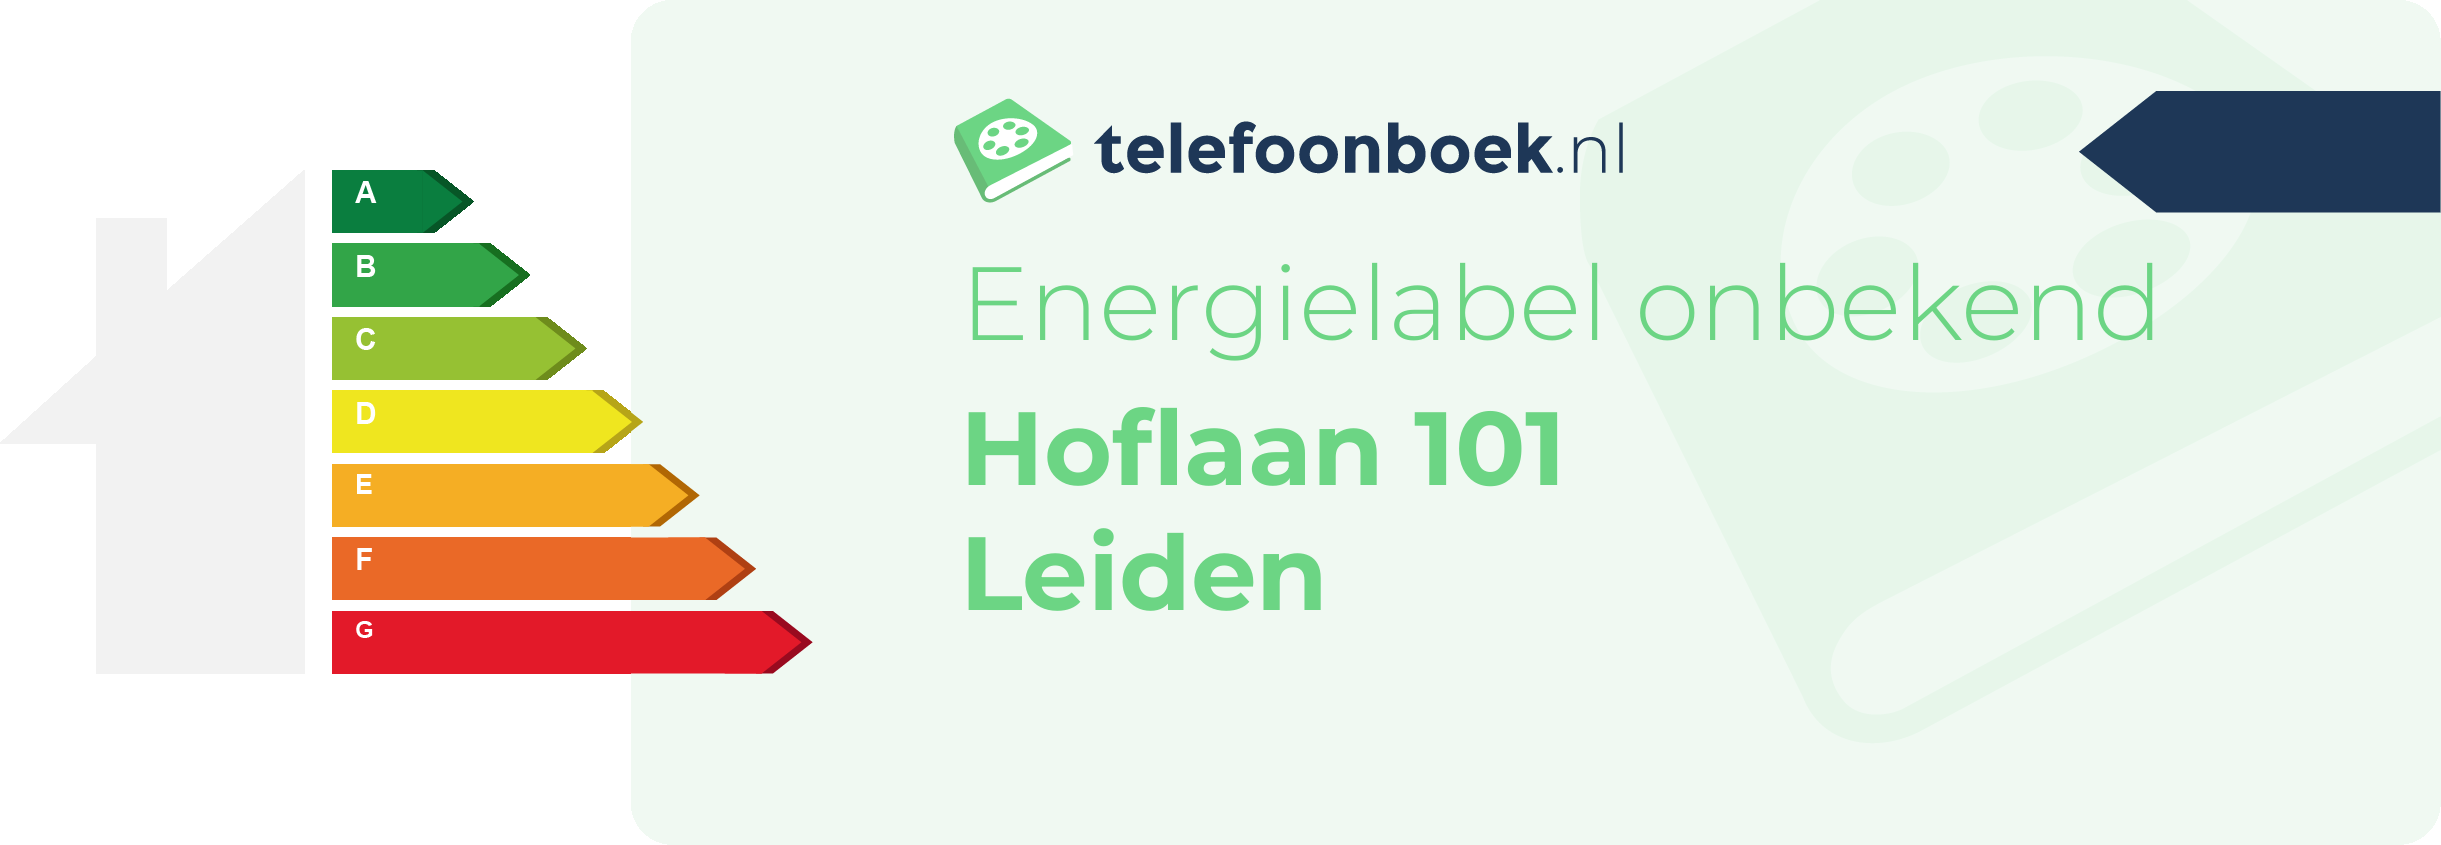 Energielabel Hoflaan 101 Leiden